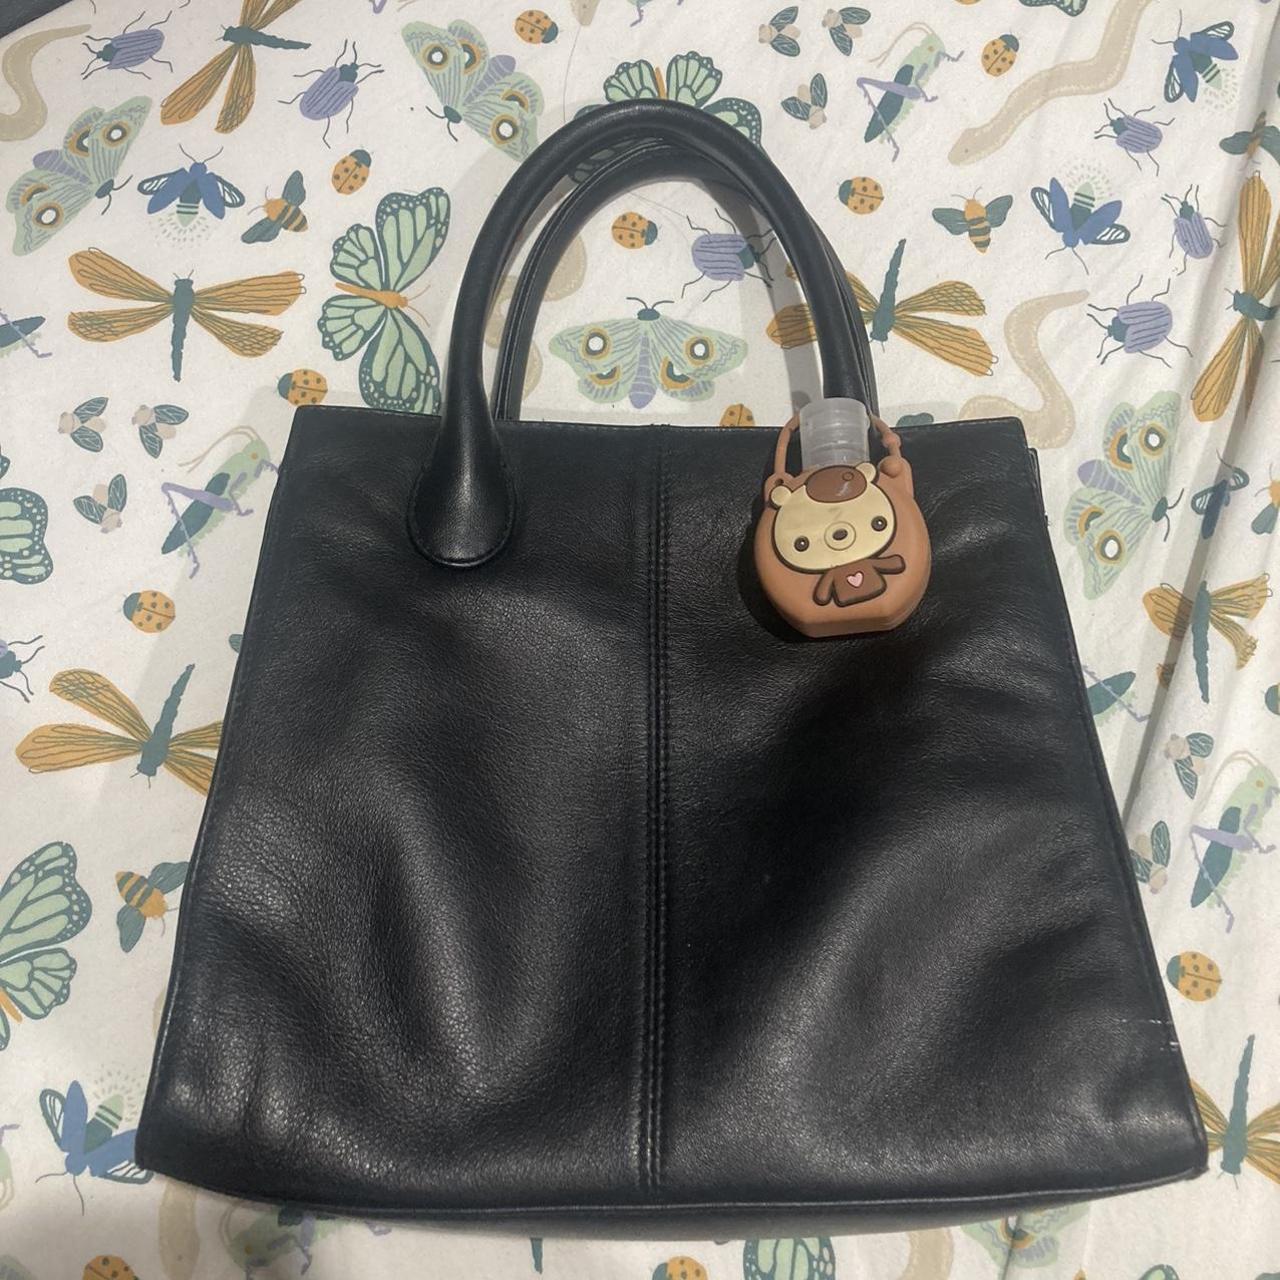 Giani Bernini Women's Black Bag